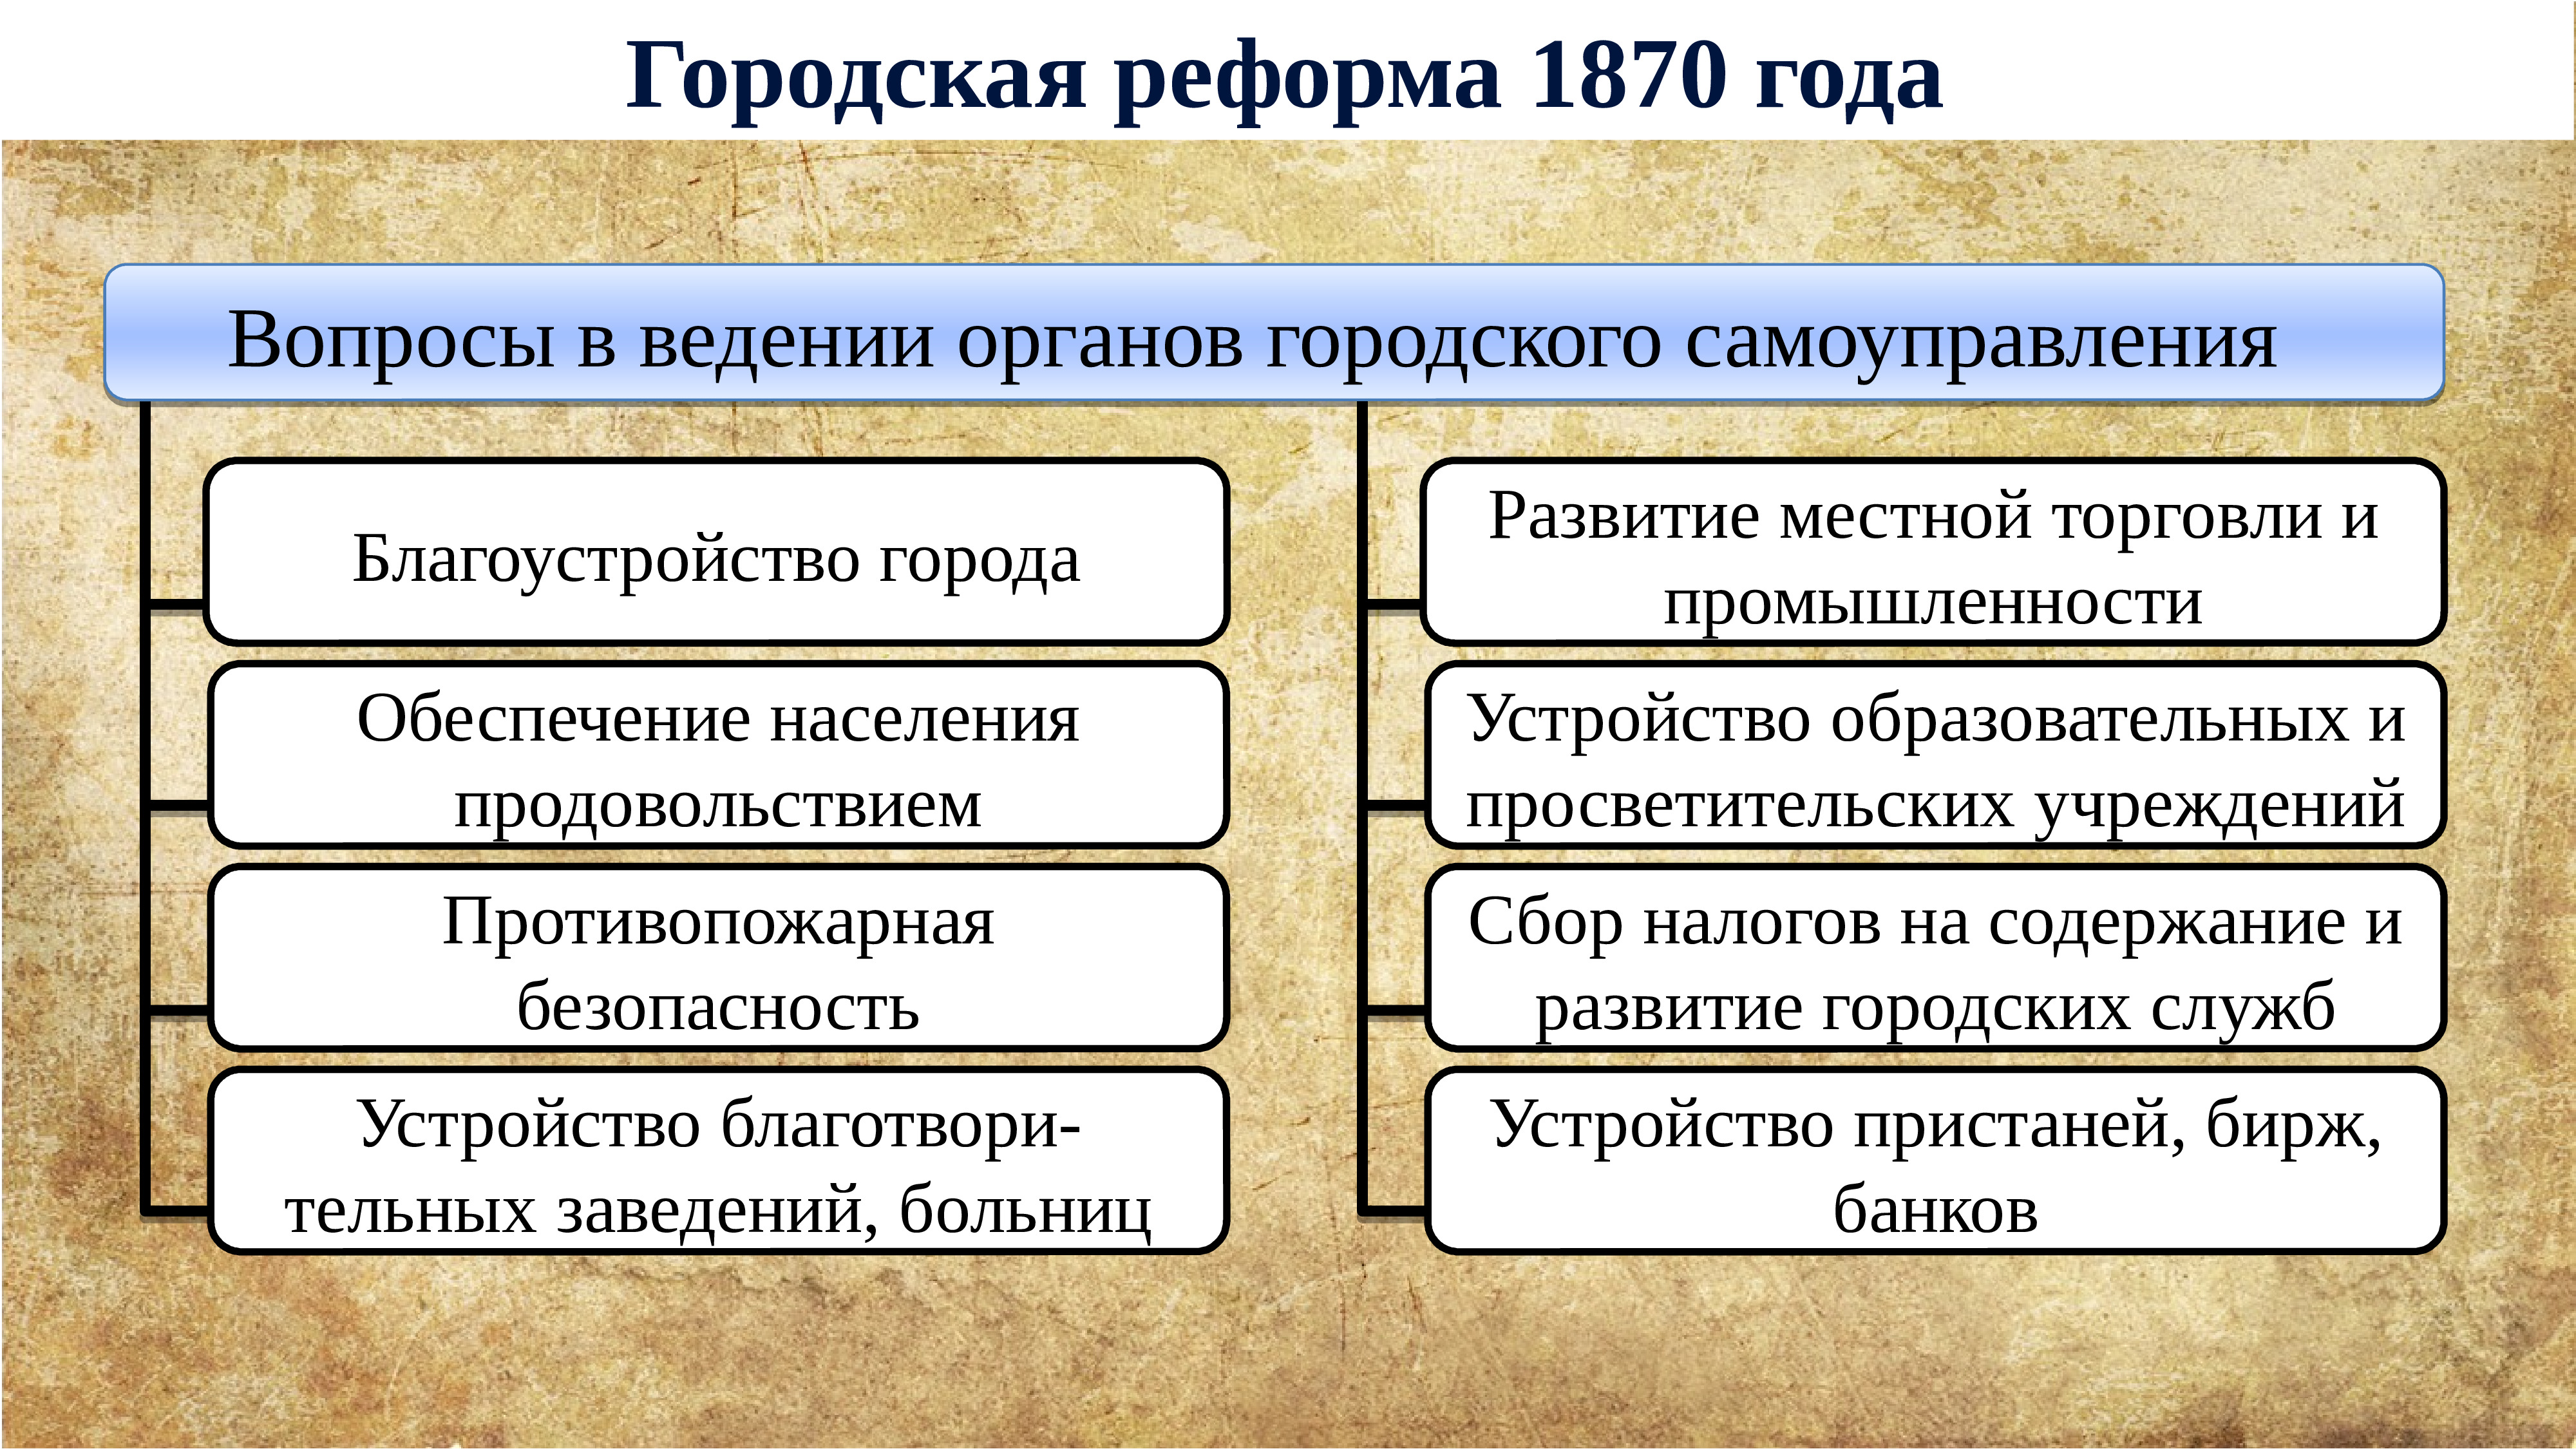 Ограничение службы дворян 25 годами дата. Губернская реформа 1860-1870. Внутренняя политика Екатерины 2.